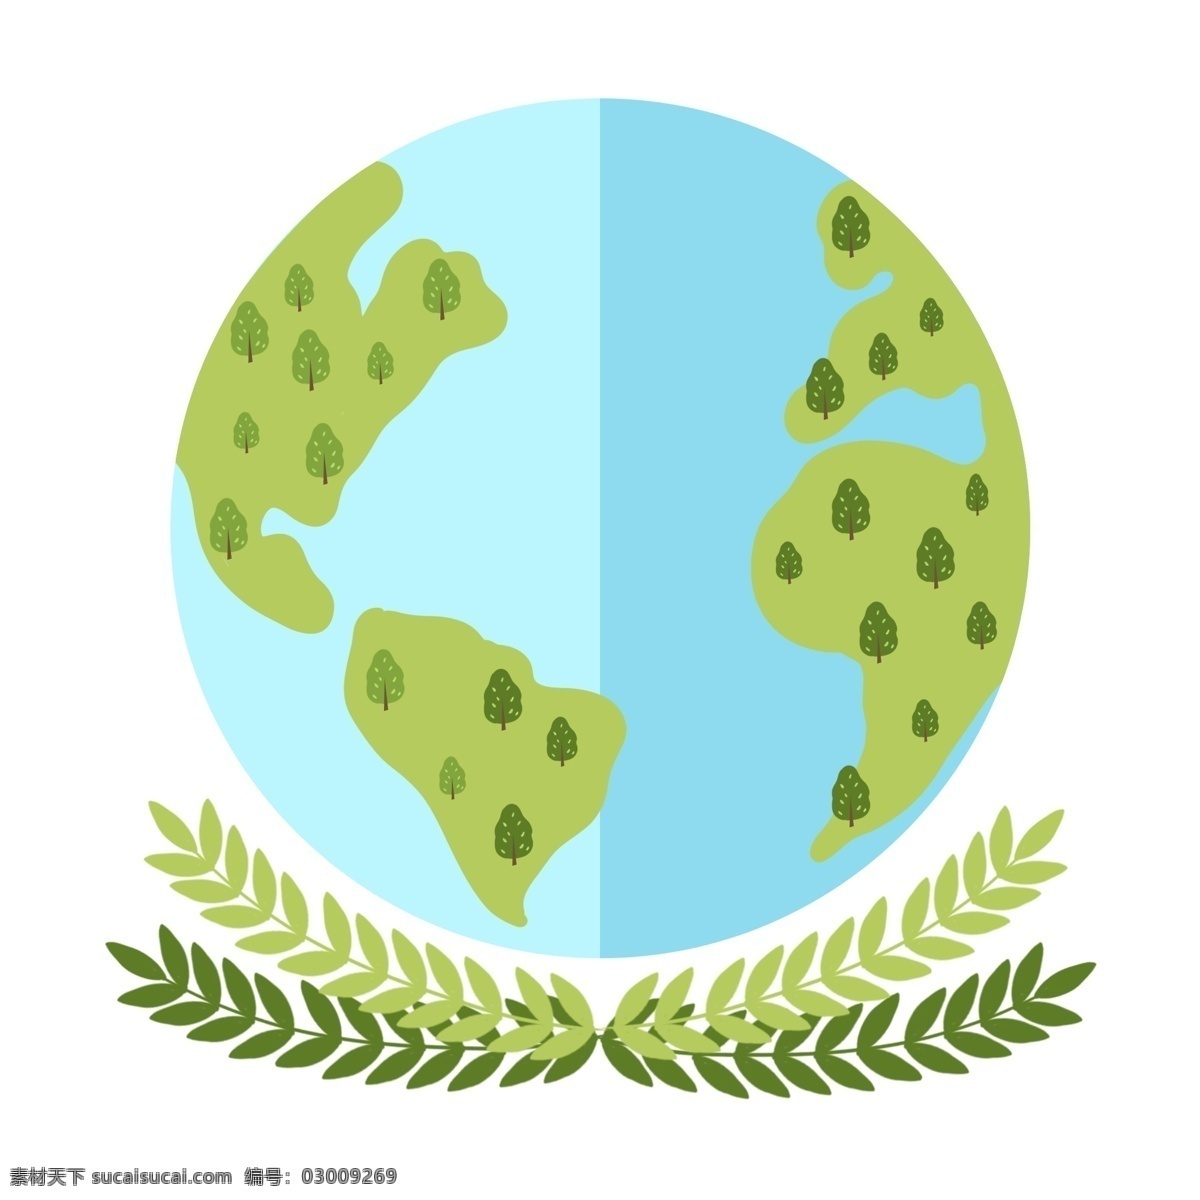 世界 地球日 绿色环保 地球 世界地球日 绿色地球 环保地球 植物 绿植 树木 绿叶 叶子 环保